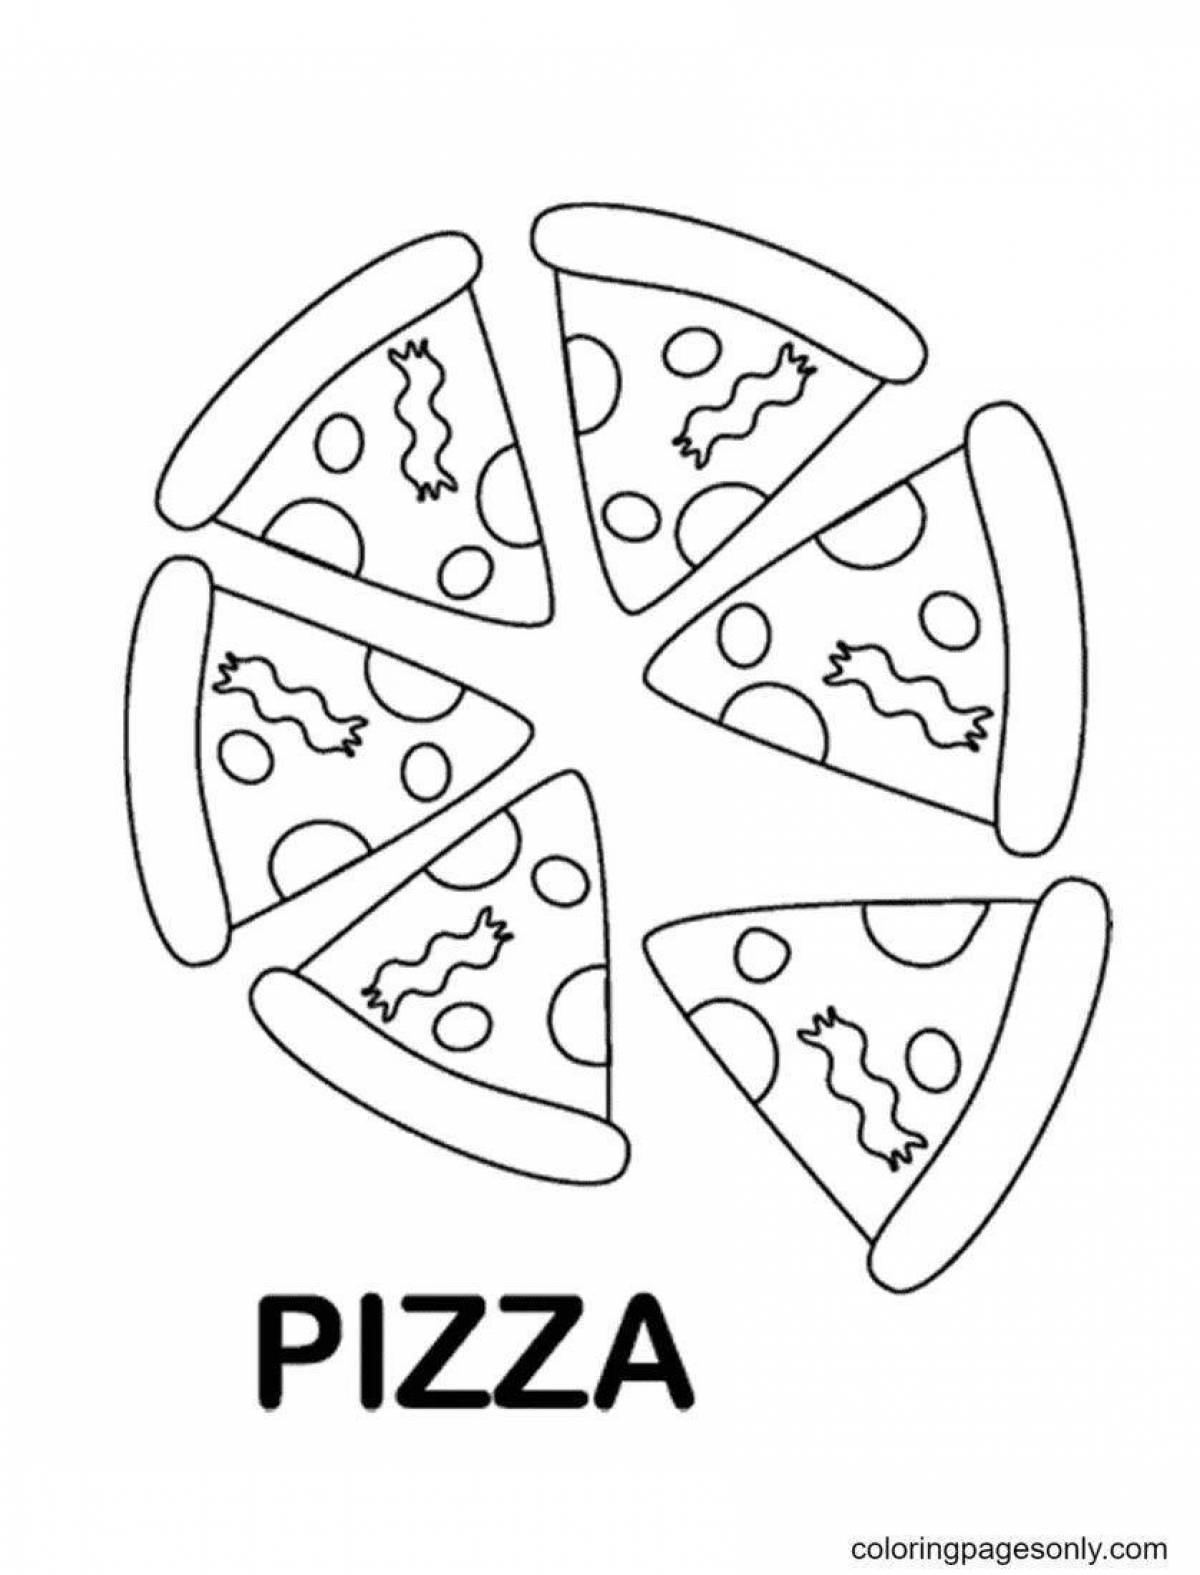 Пригласительная раскраска пепперони пицца